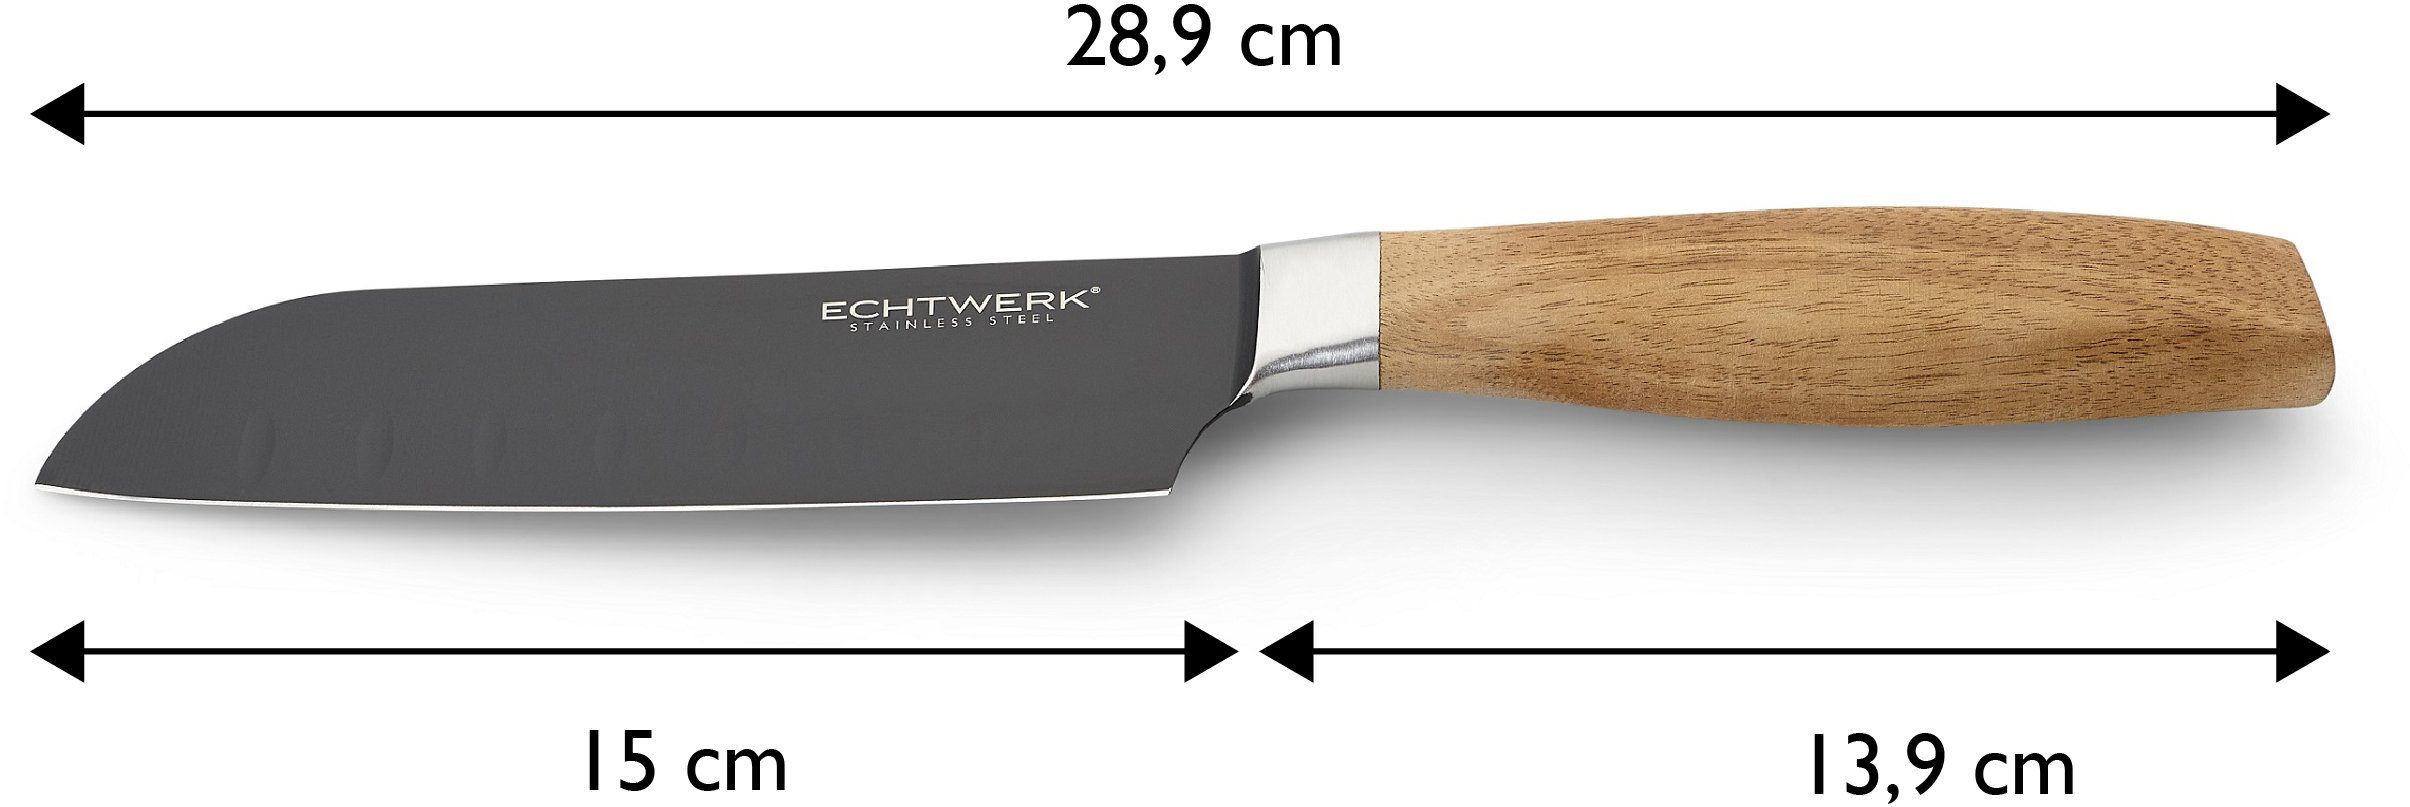 ECHTWERK Santokumesser Classic, aus hochwertigem Stahl, cm 15 Akazienholzgriff, Black-Edition